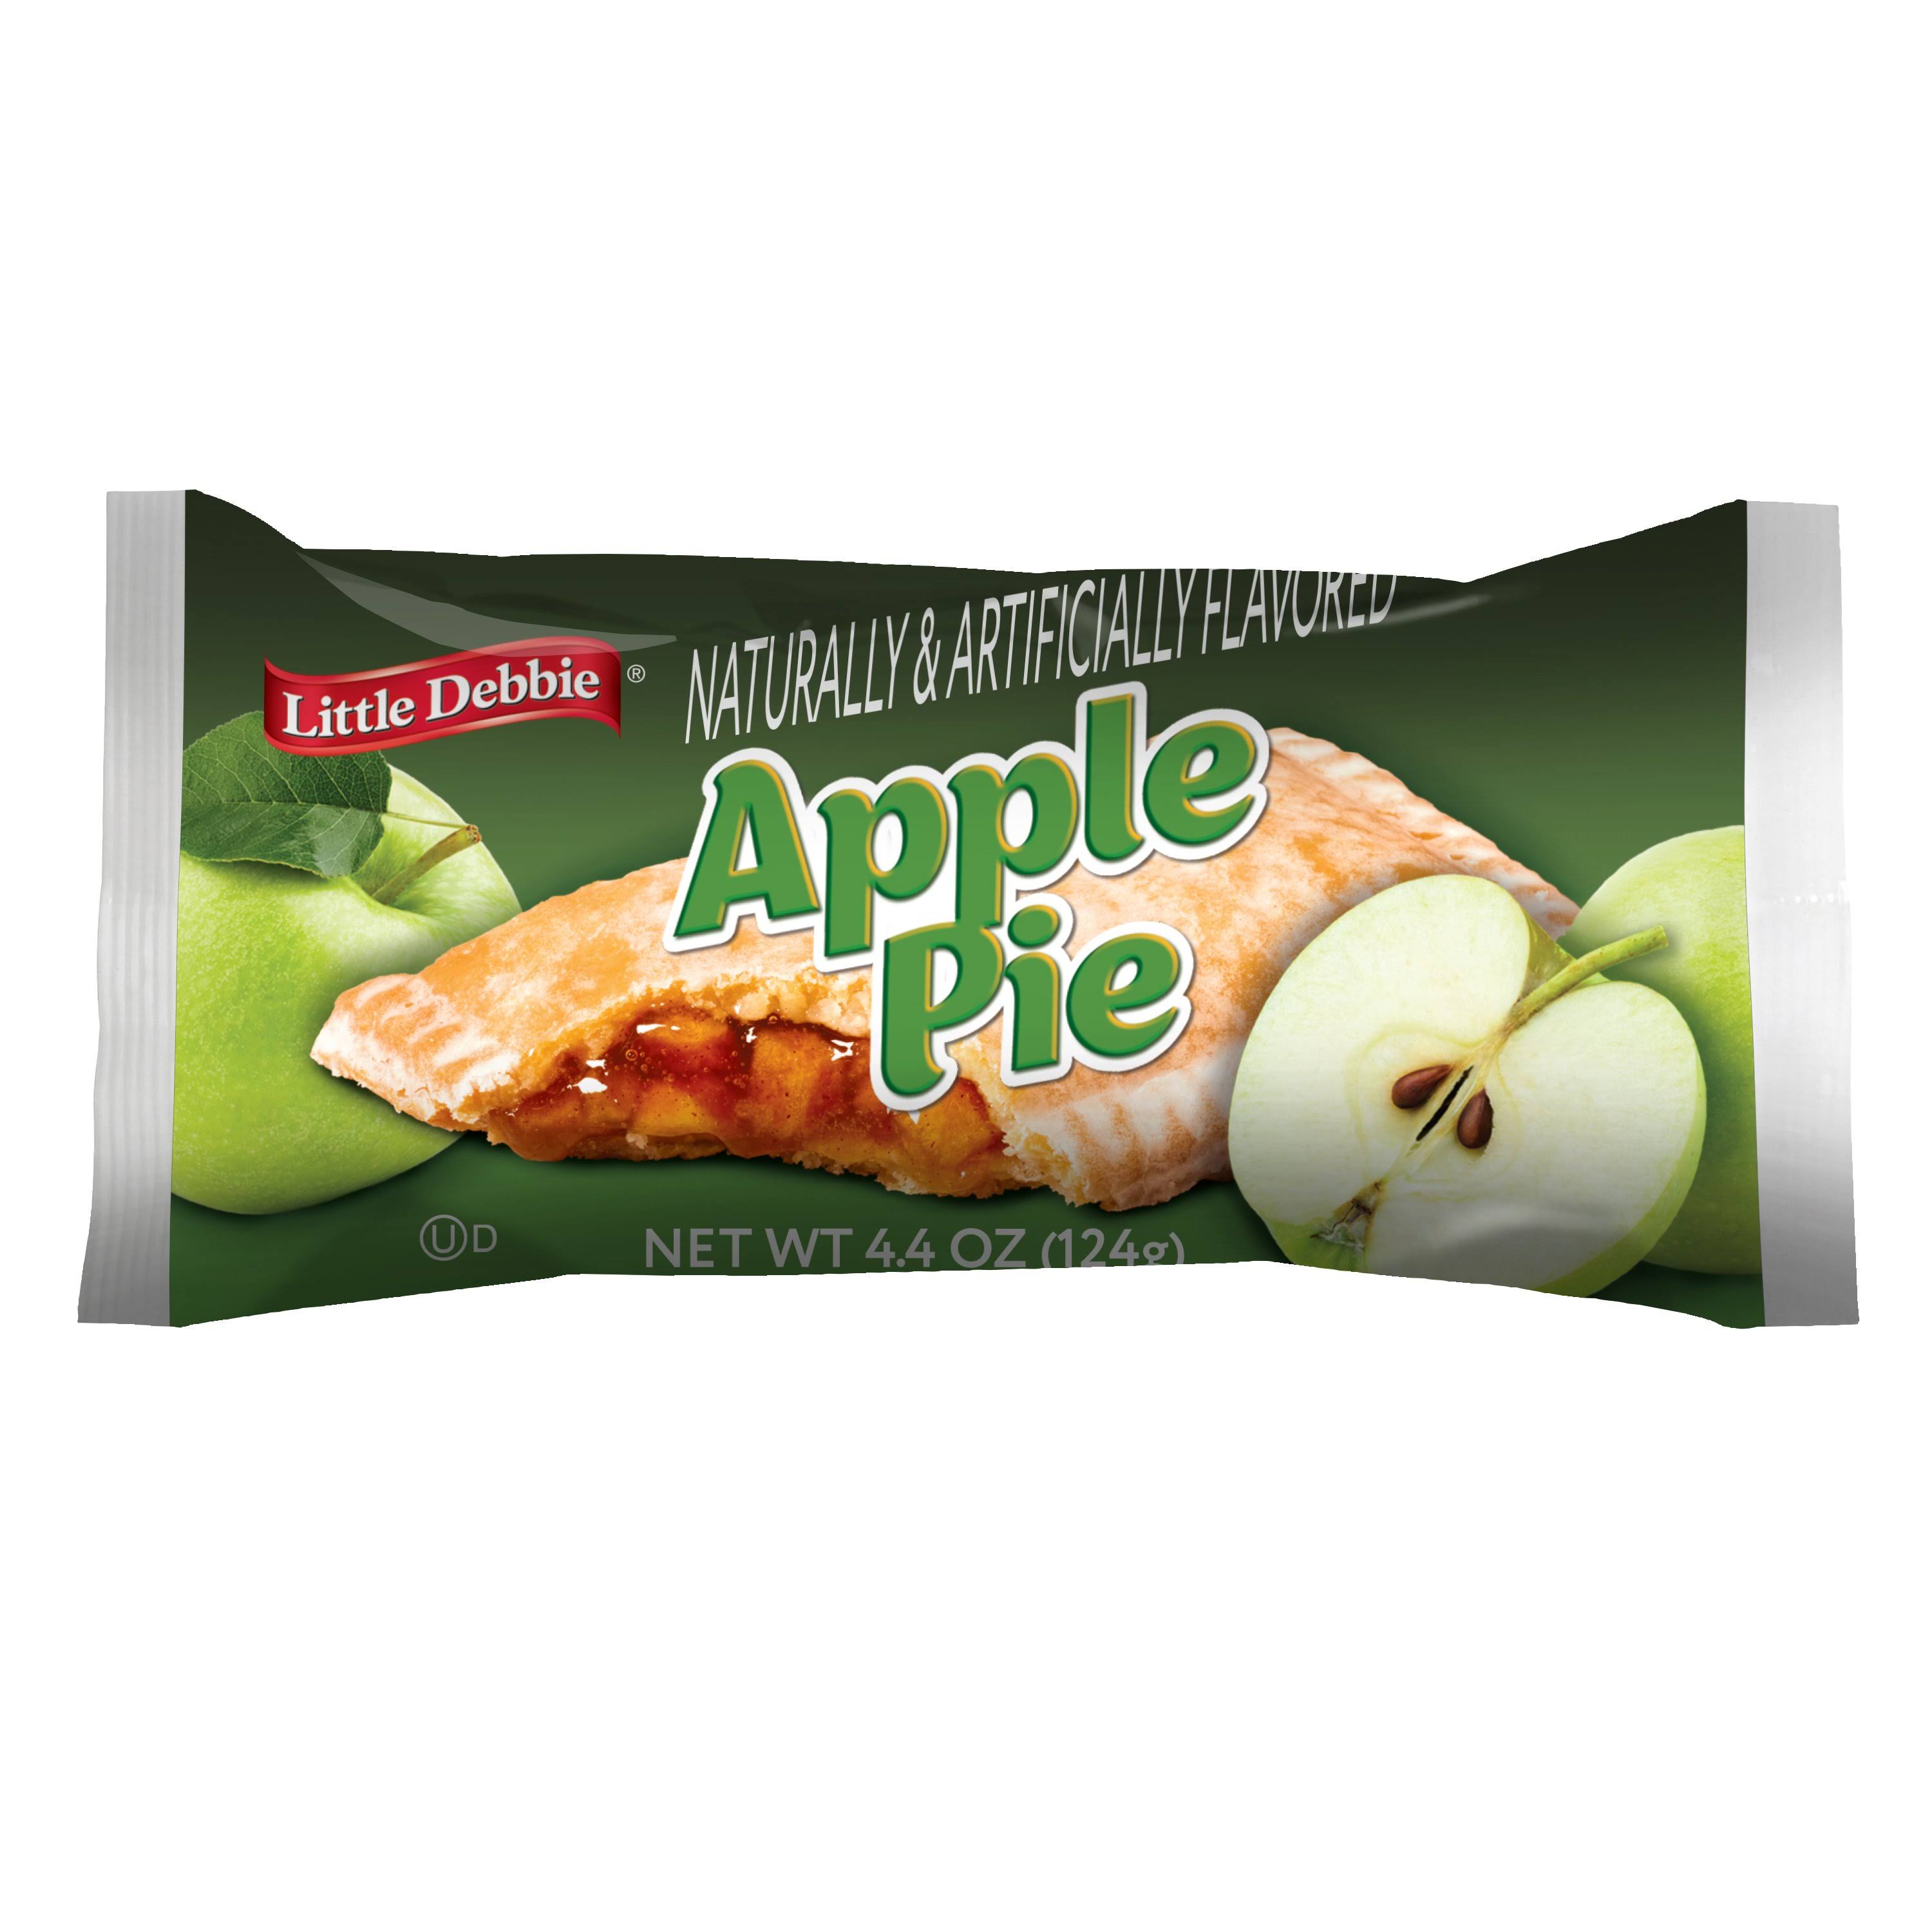 Little Debbie - Apple Pie, 4.4 oz.